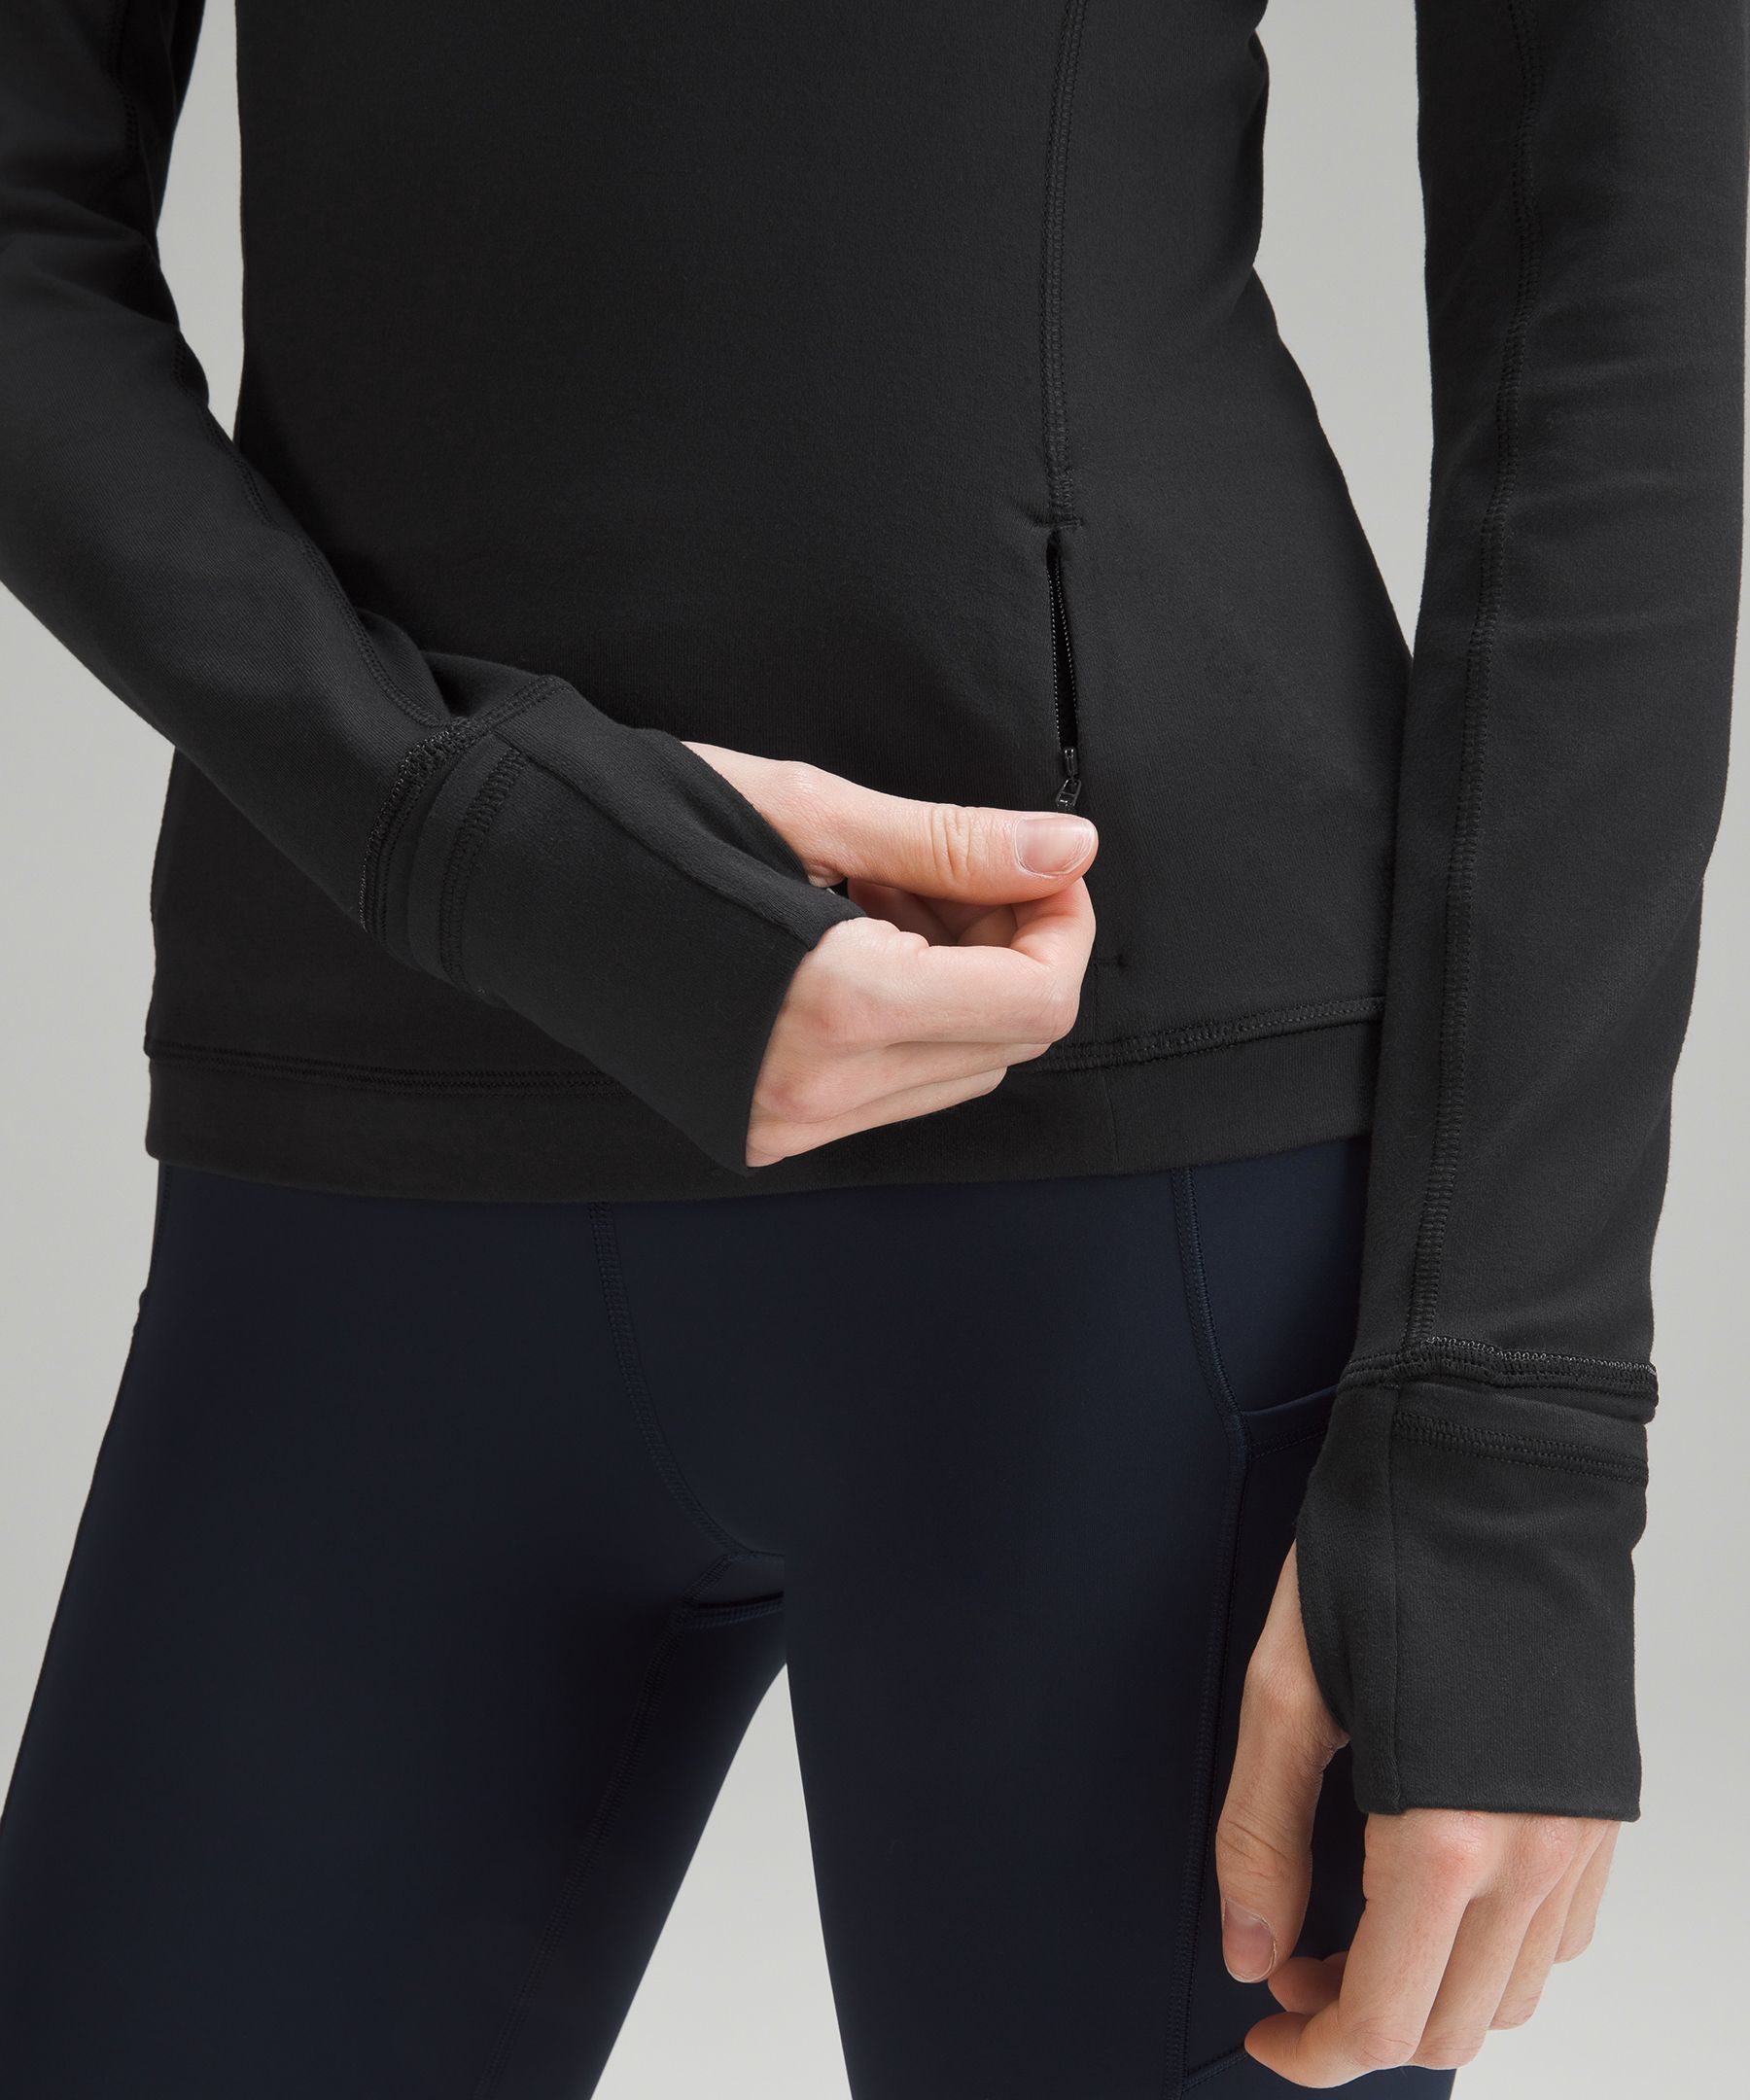 LULULEMON Long Sleeve HOODED Women's Active Wear Size 4 Black